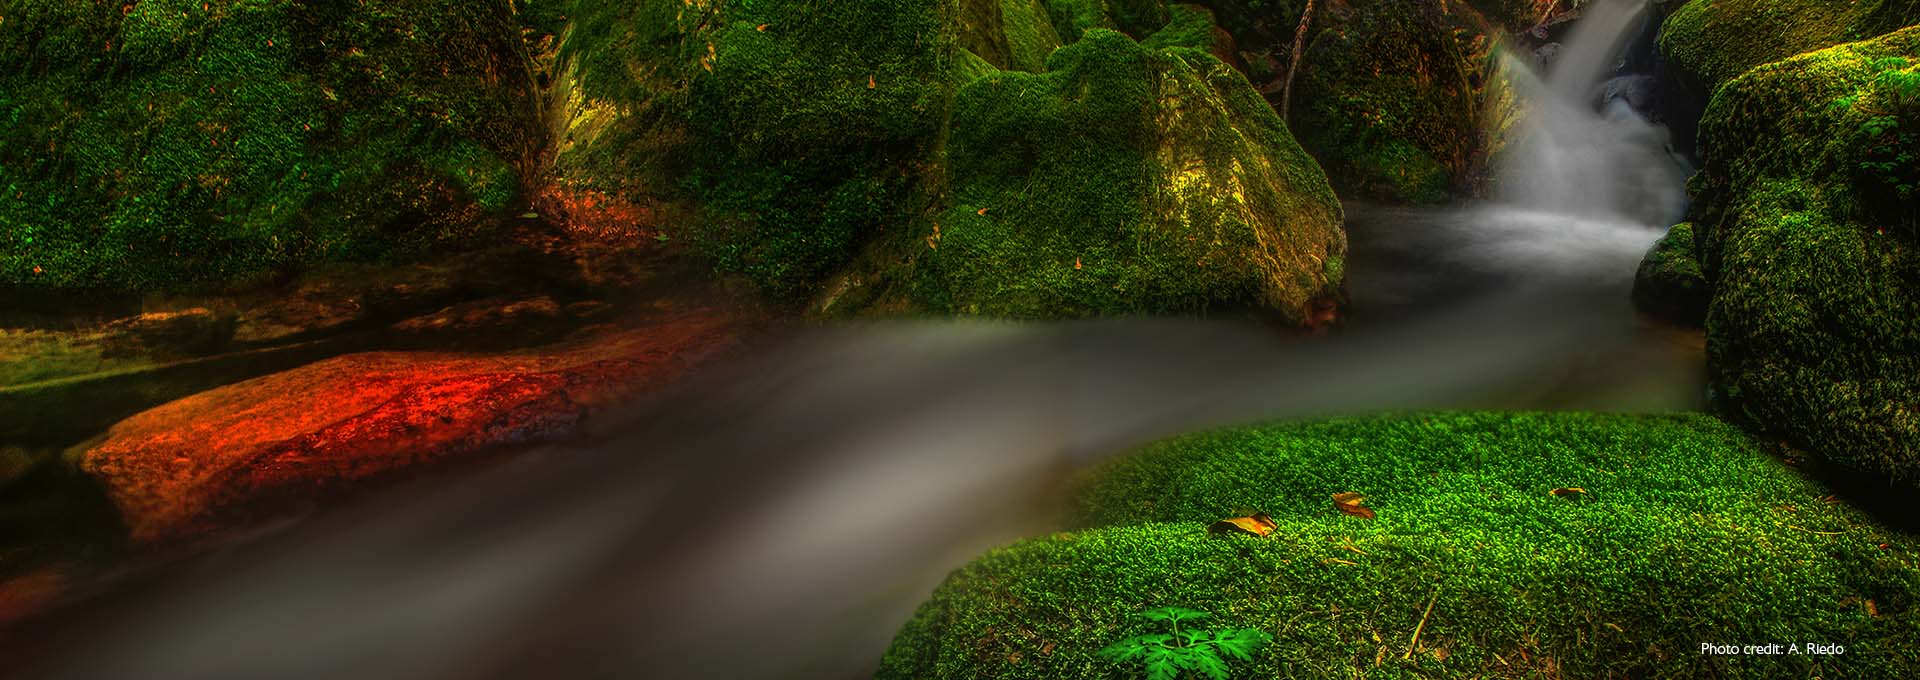 Billede af et lille vandløb mellem mosdækkede sten, der er lysegrønne, fotograferet af Bernafon Alpha høreapparatbrugere 